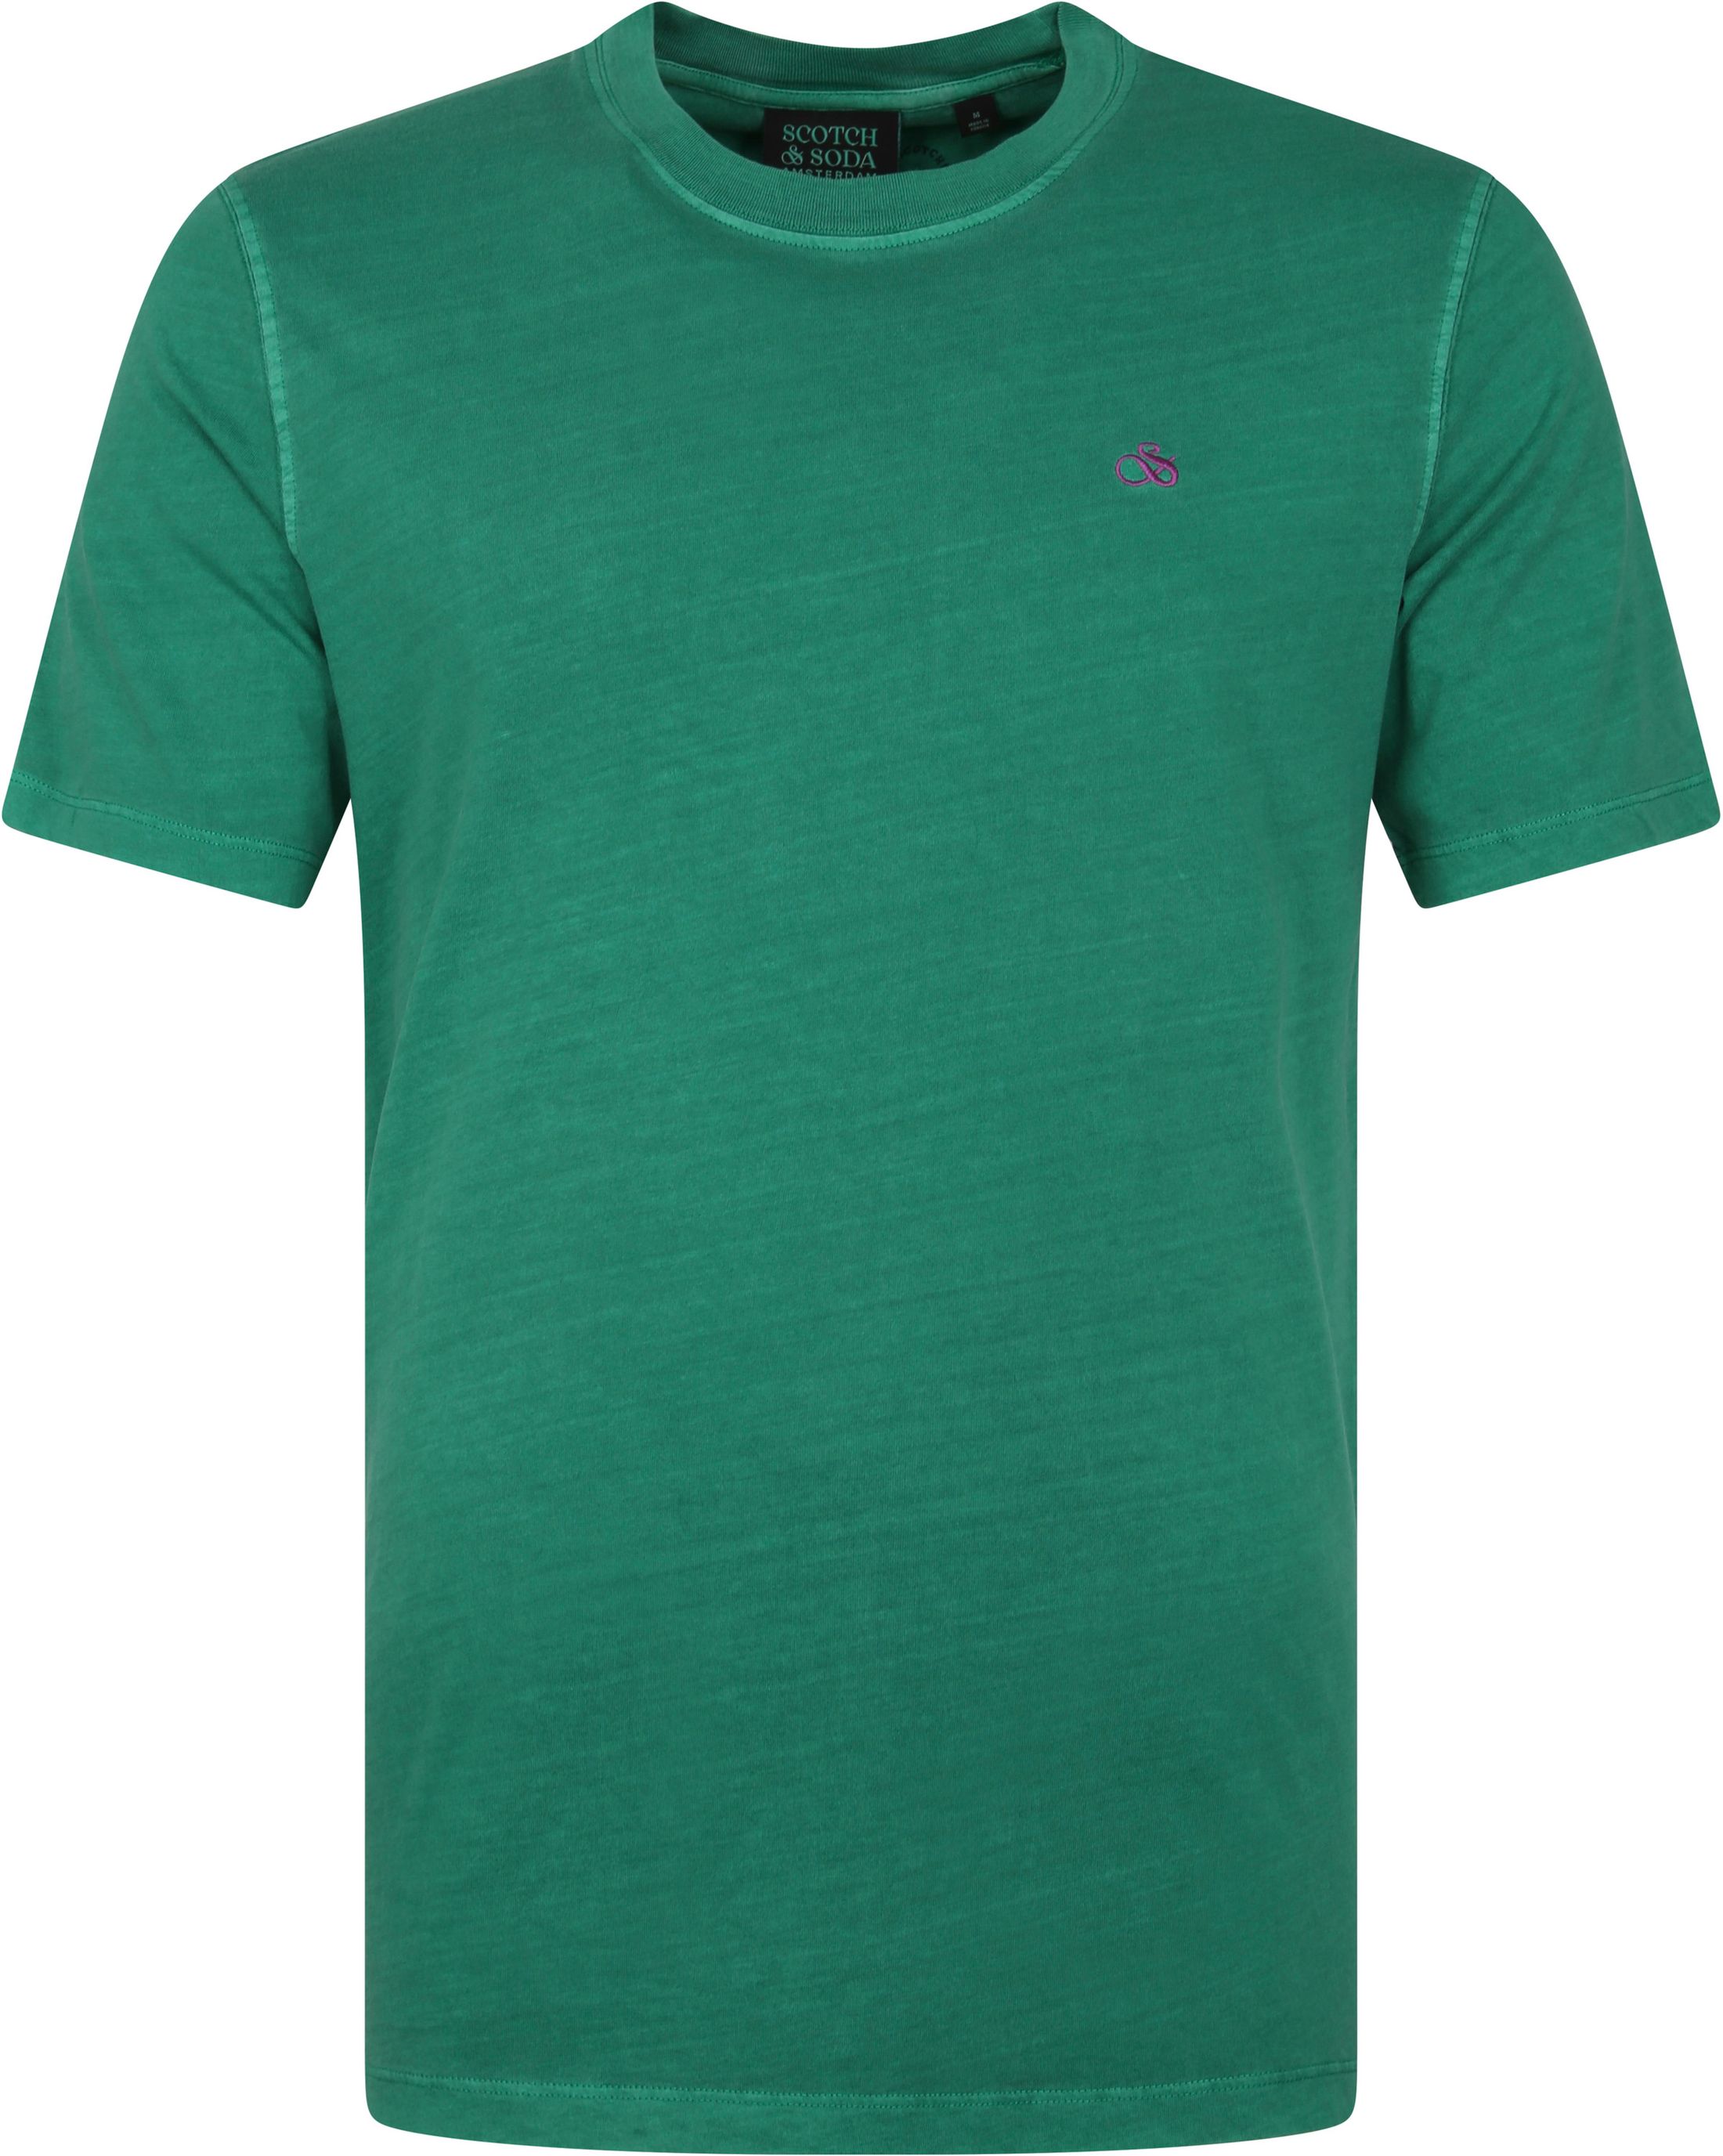 Scotch & Soda T-Shirt Jersey Vert taille L